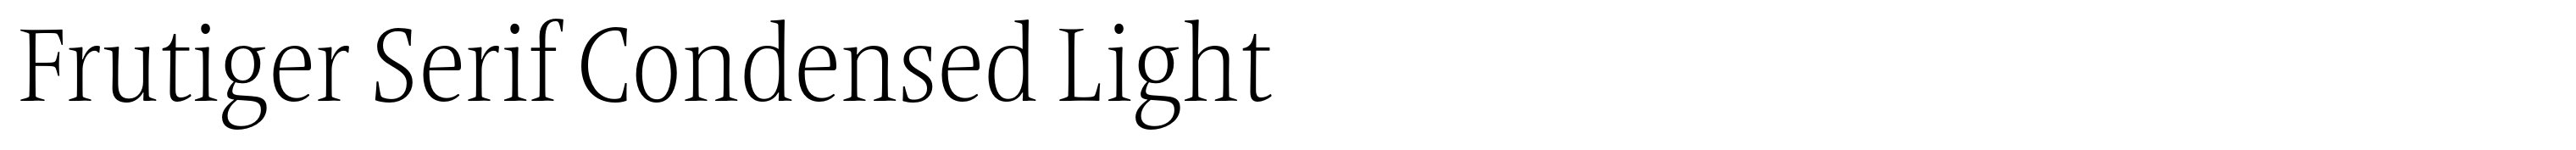 Frutiger Serif Condensed Light